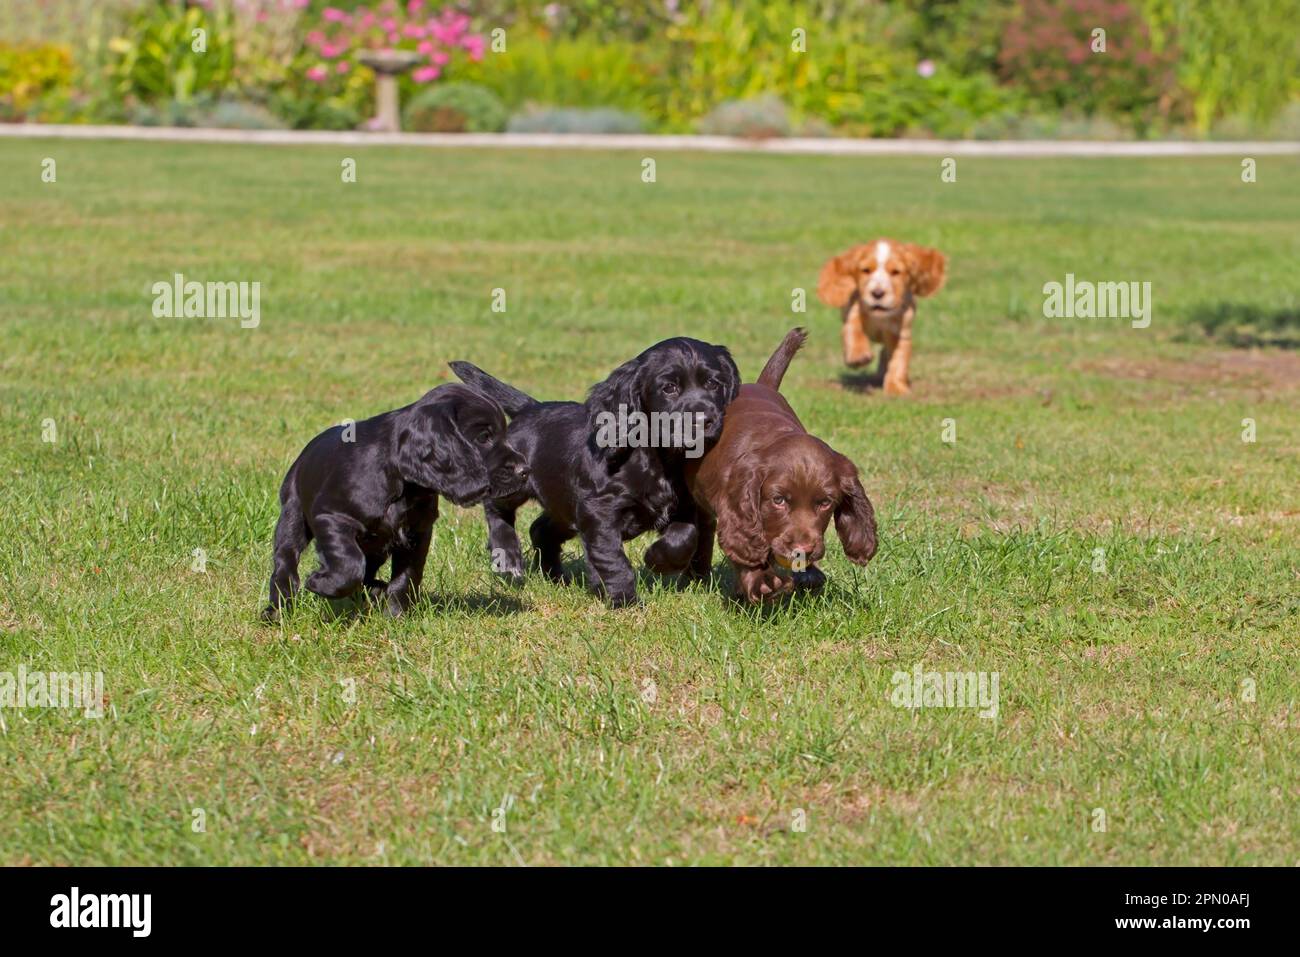 Haushund, englischer Cocker Spaniel, vier Welpen, verschiedene Mantelfarben, auf dem Rasen spielen, Norfolk, England, Vereinigtes Königreich Stockfoto